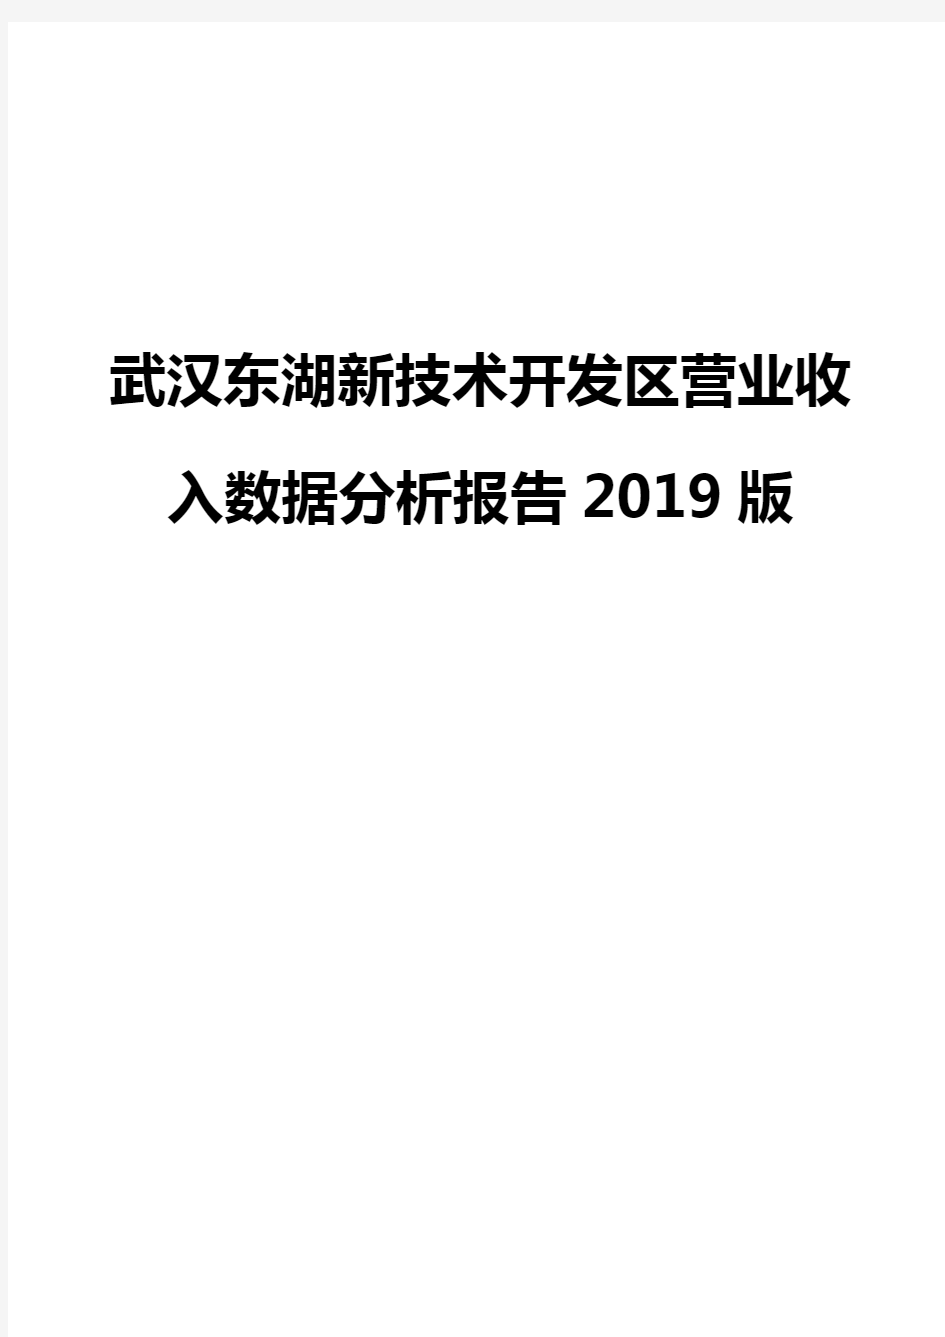 武汉东湖新技术开发区营业收入数据分析报告2019版